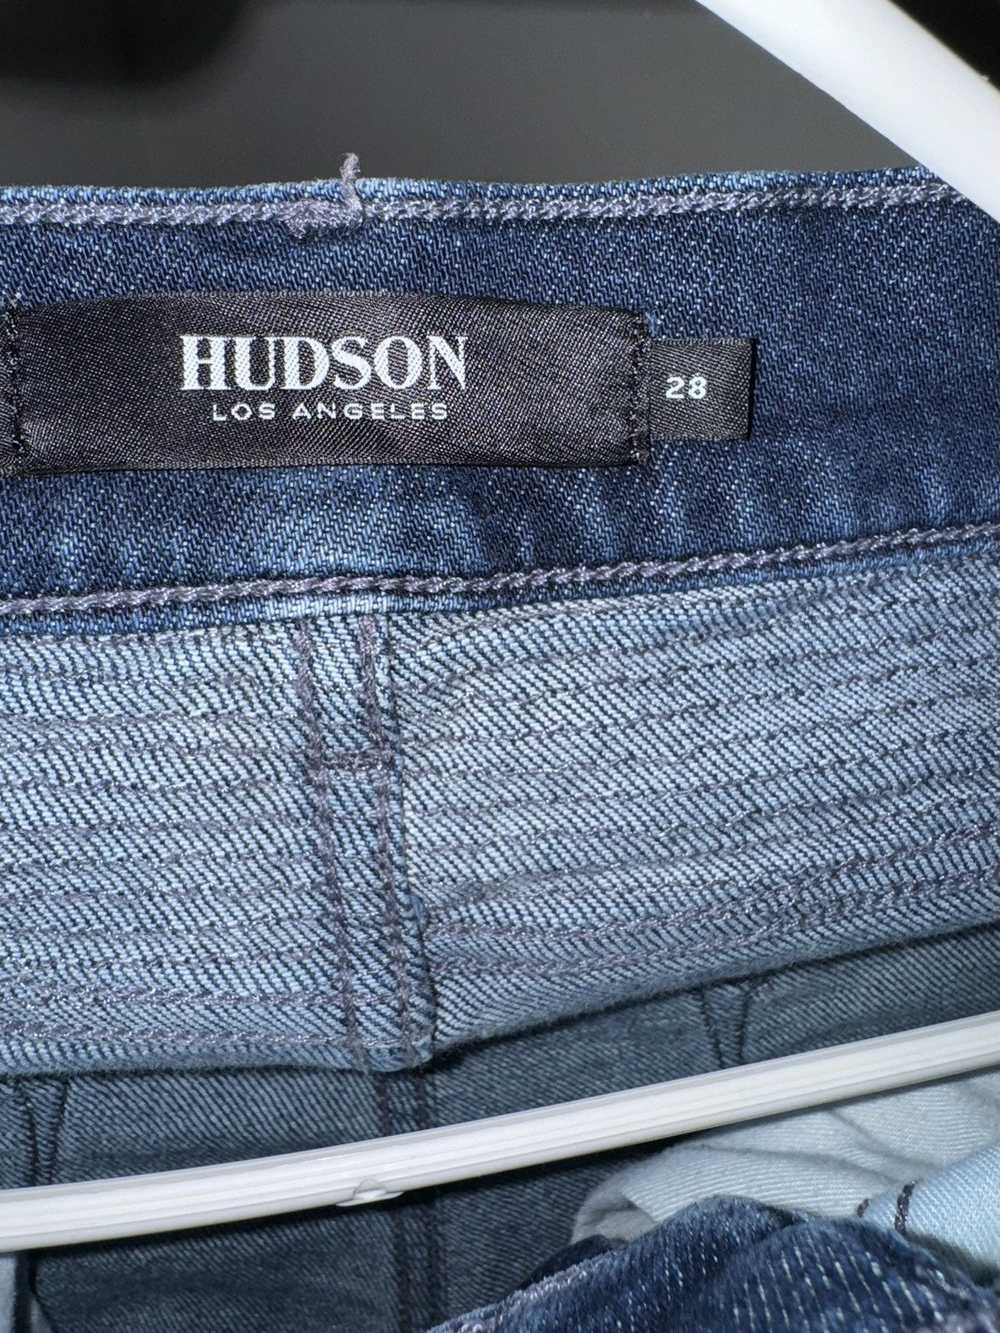 Hudson Hudson jeans - image 4